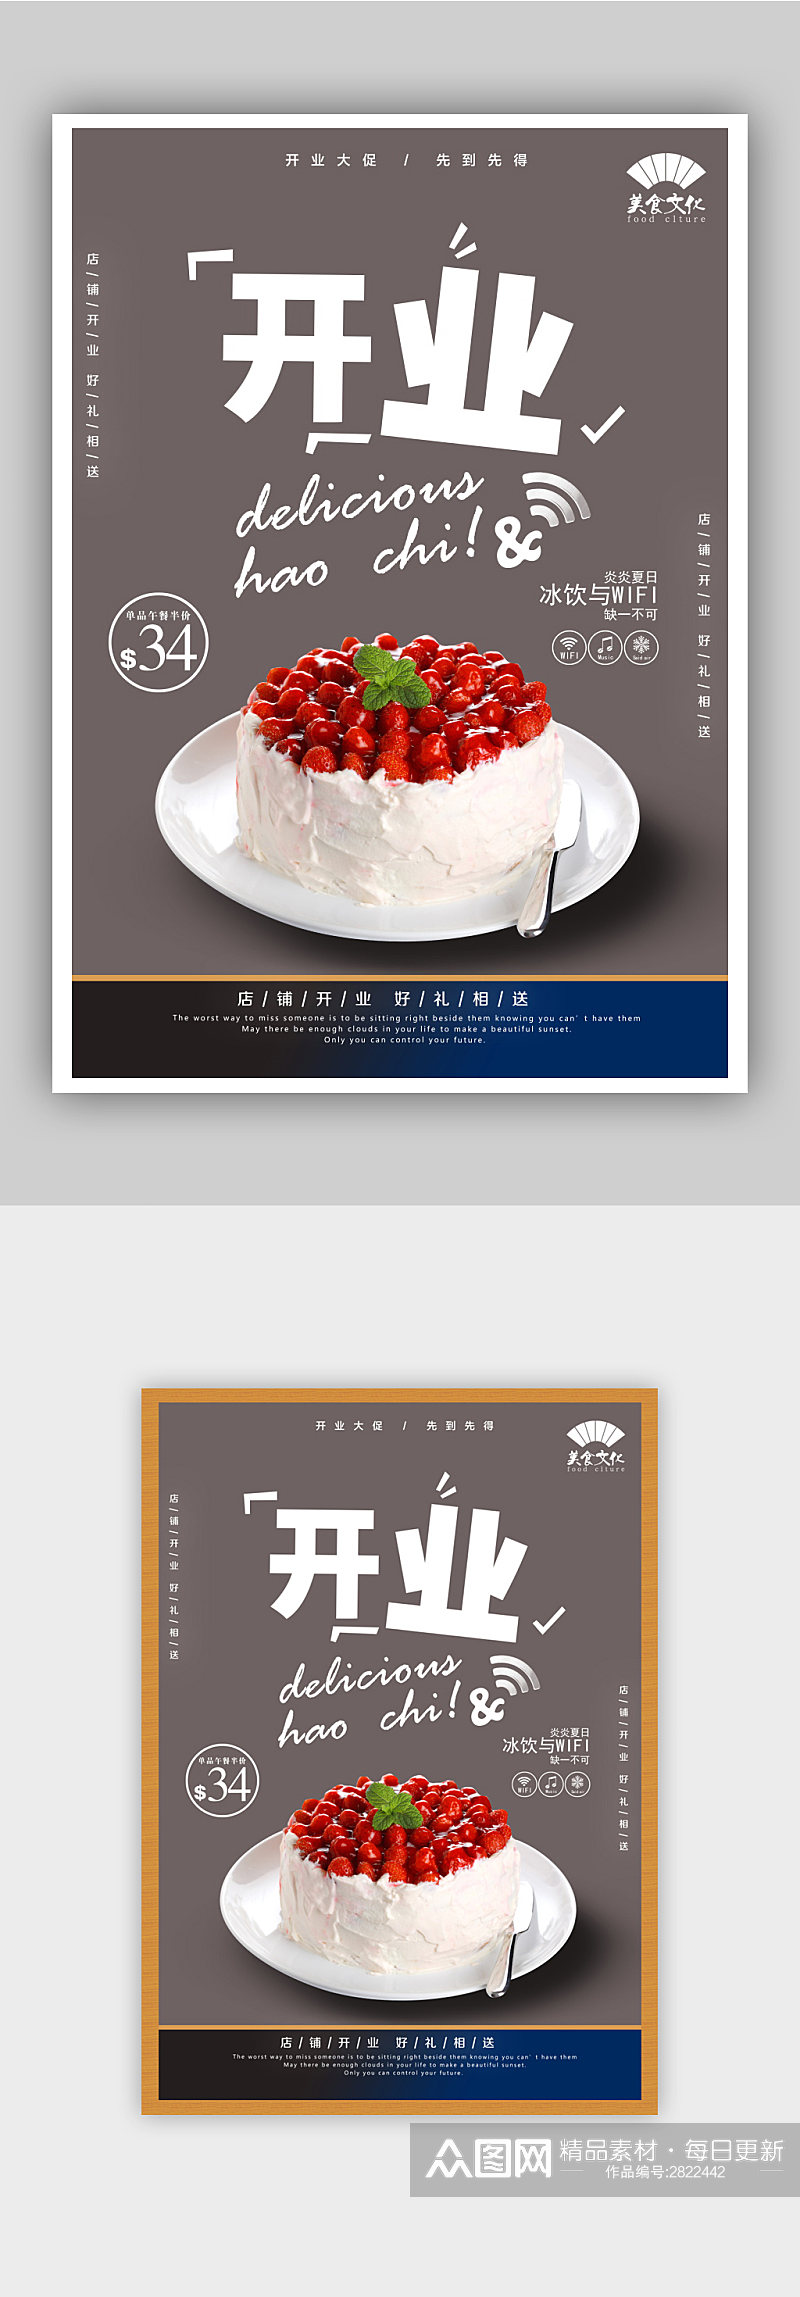 蛋糕店餐厅开业促销海报素材